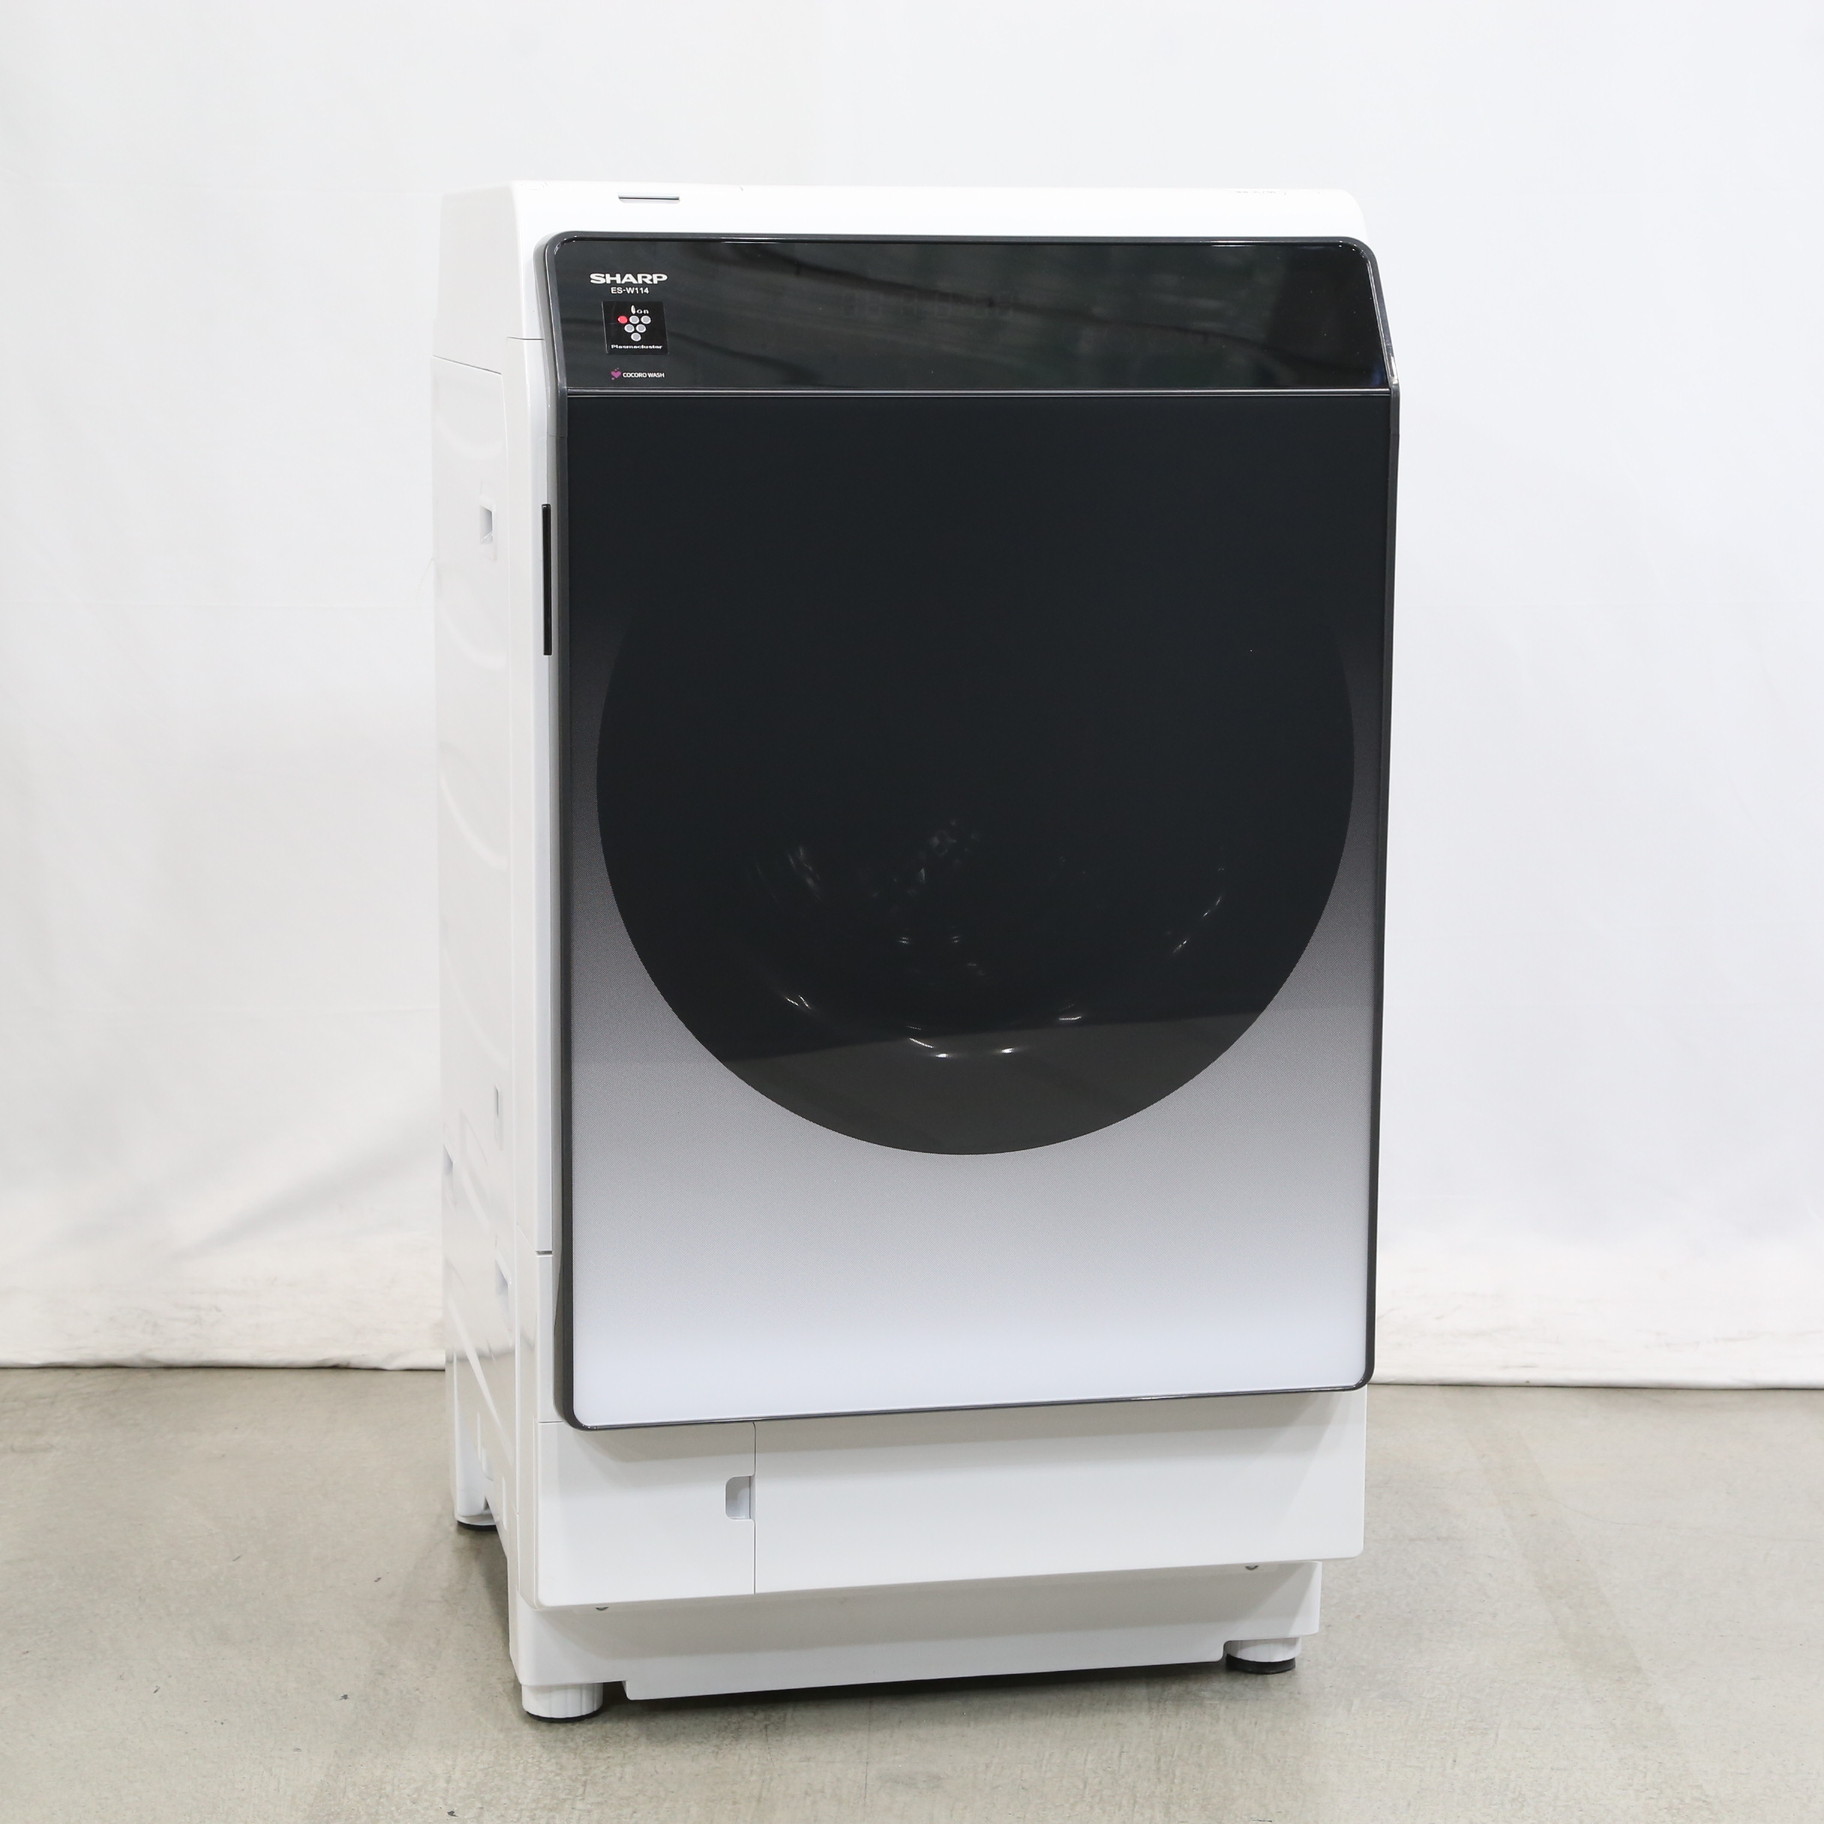 〔展示品〕 ドラム式洗濯乾燥機 シルバー系 ES-W114-SR ［洗濯11.0kg ／乾燥6.0kg ／ヒートポンプ乾燥 ／右開き］